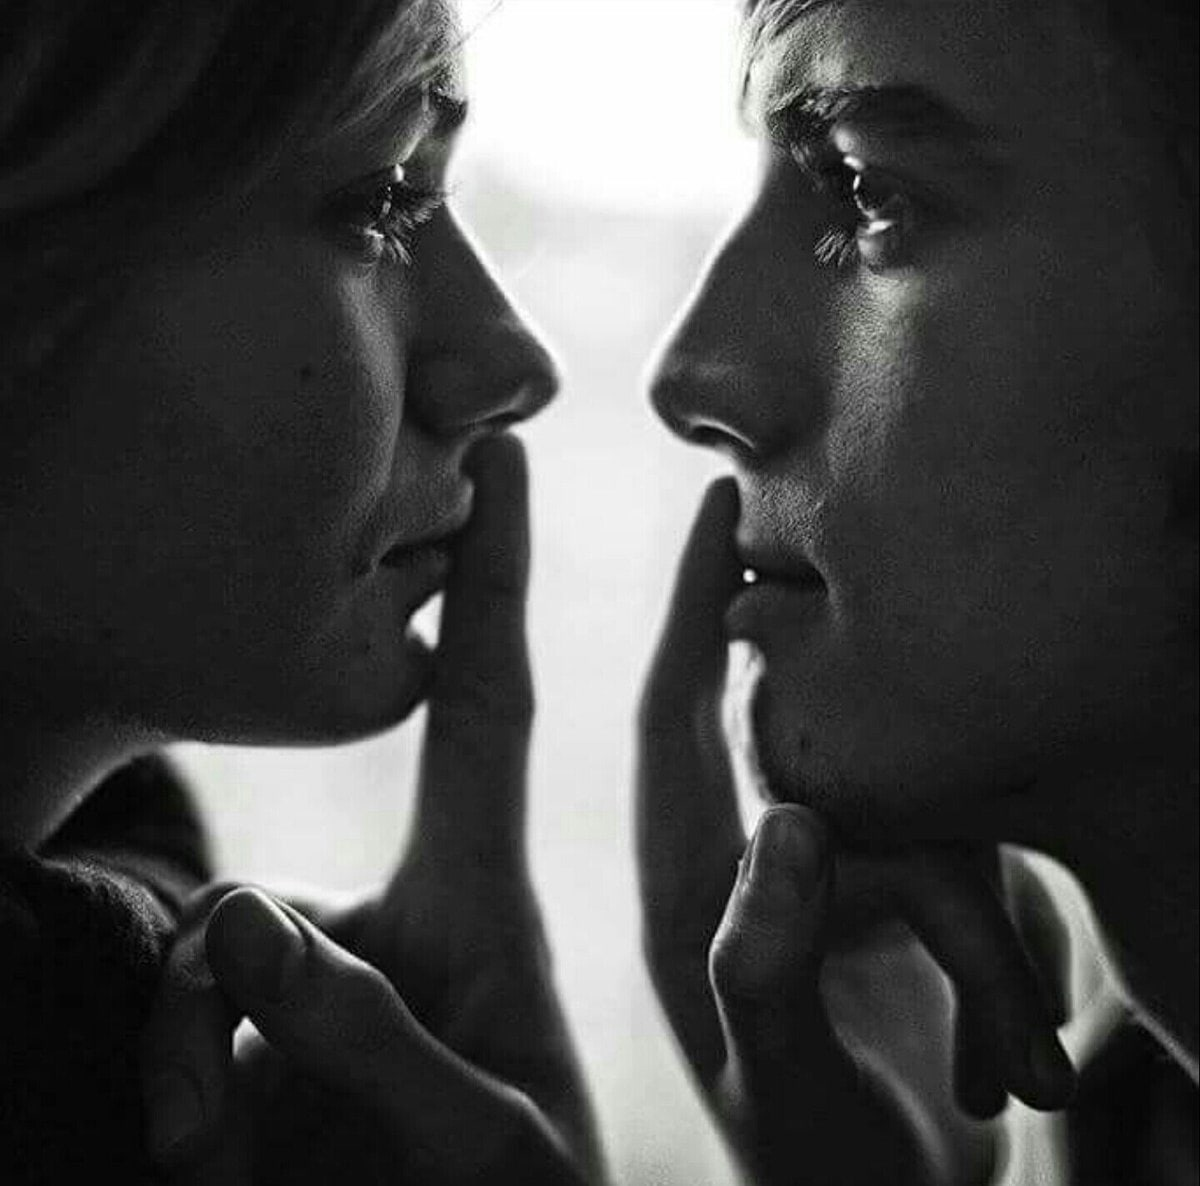 Долго смотрим глаза друг другу. Молчаливая любовь. Влюбленные взгляды. Двое молчание. Мужчина и женщина глаза в глаза.